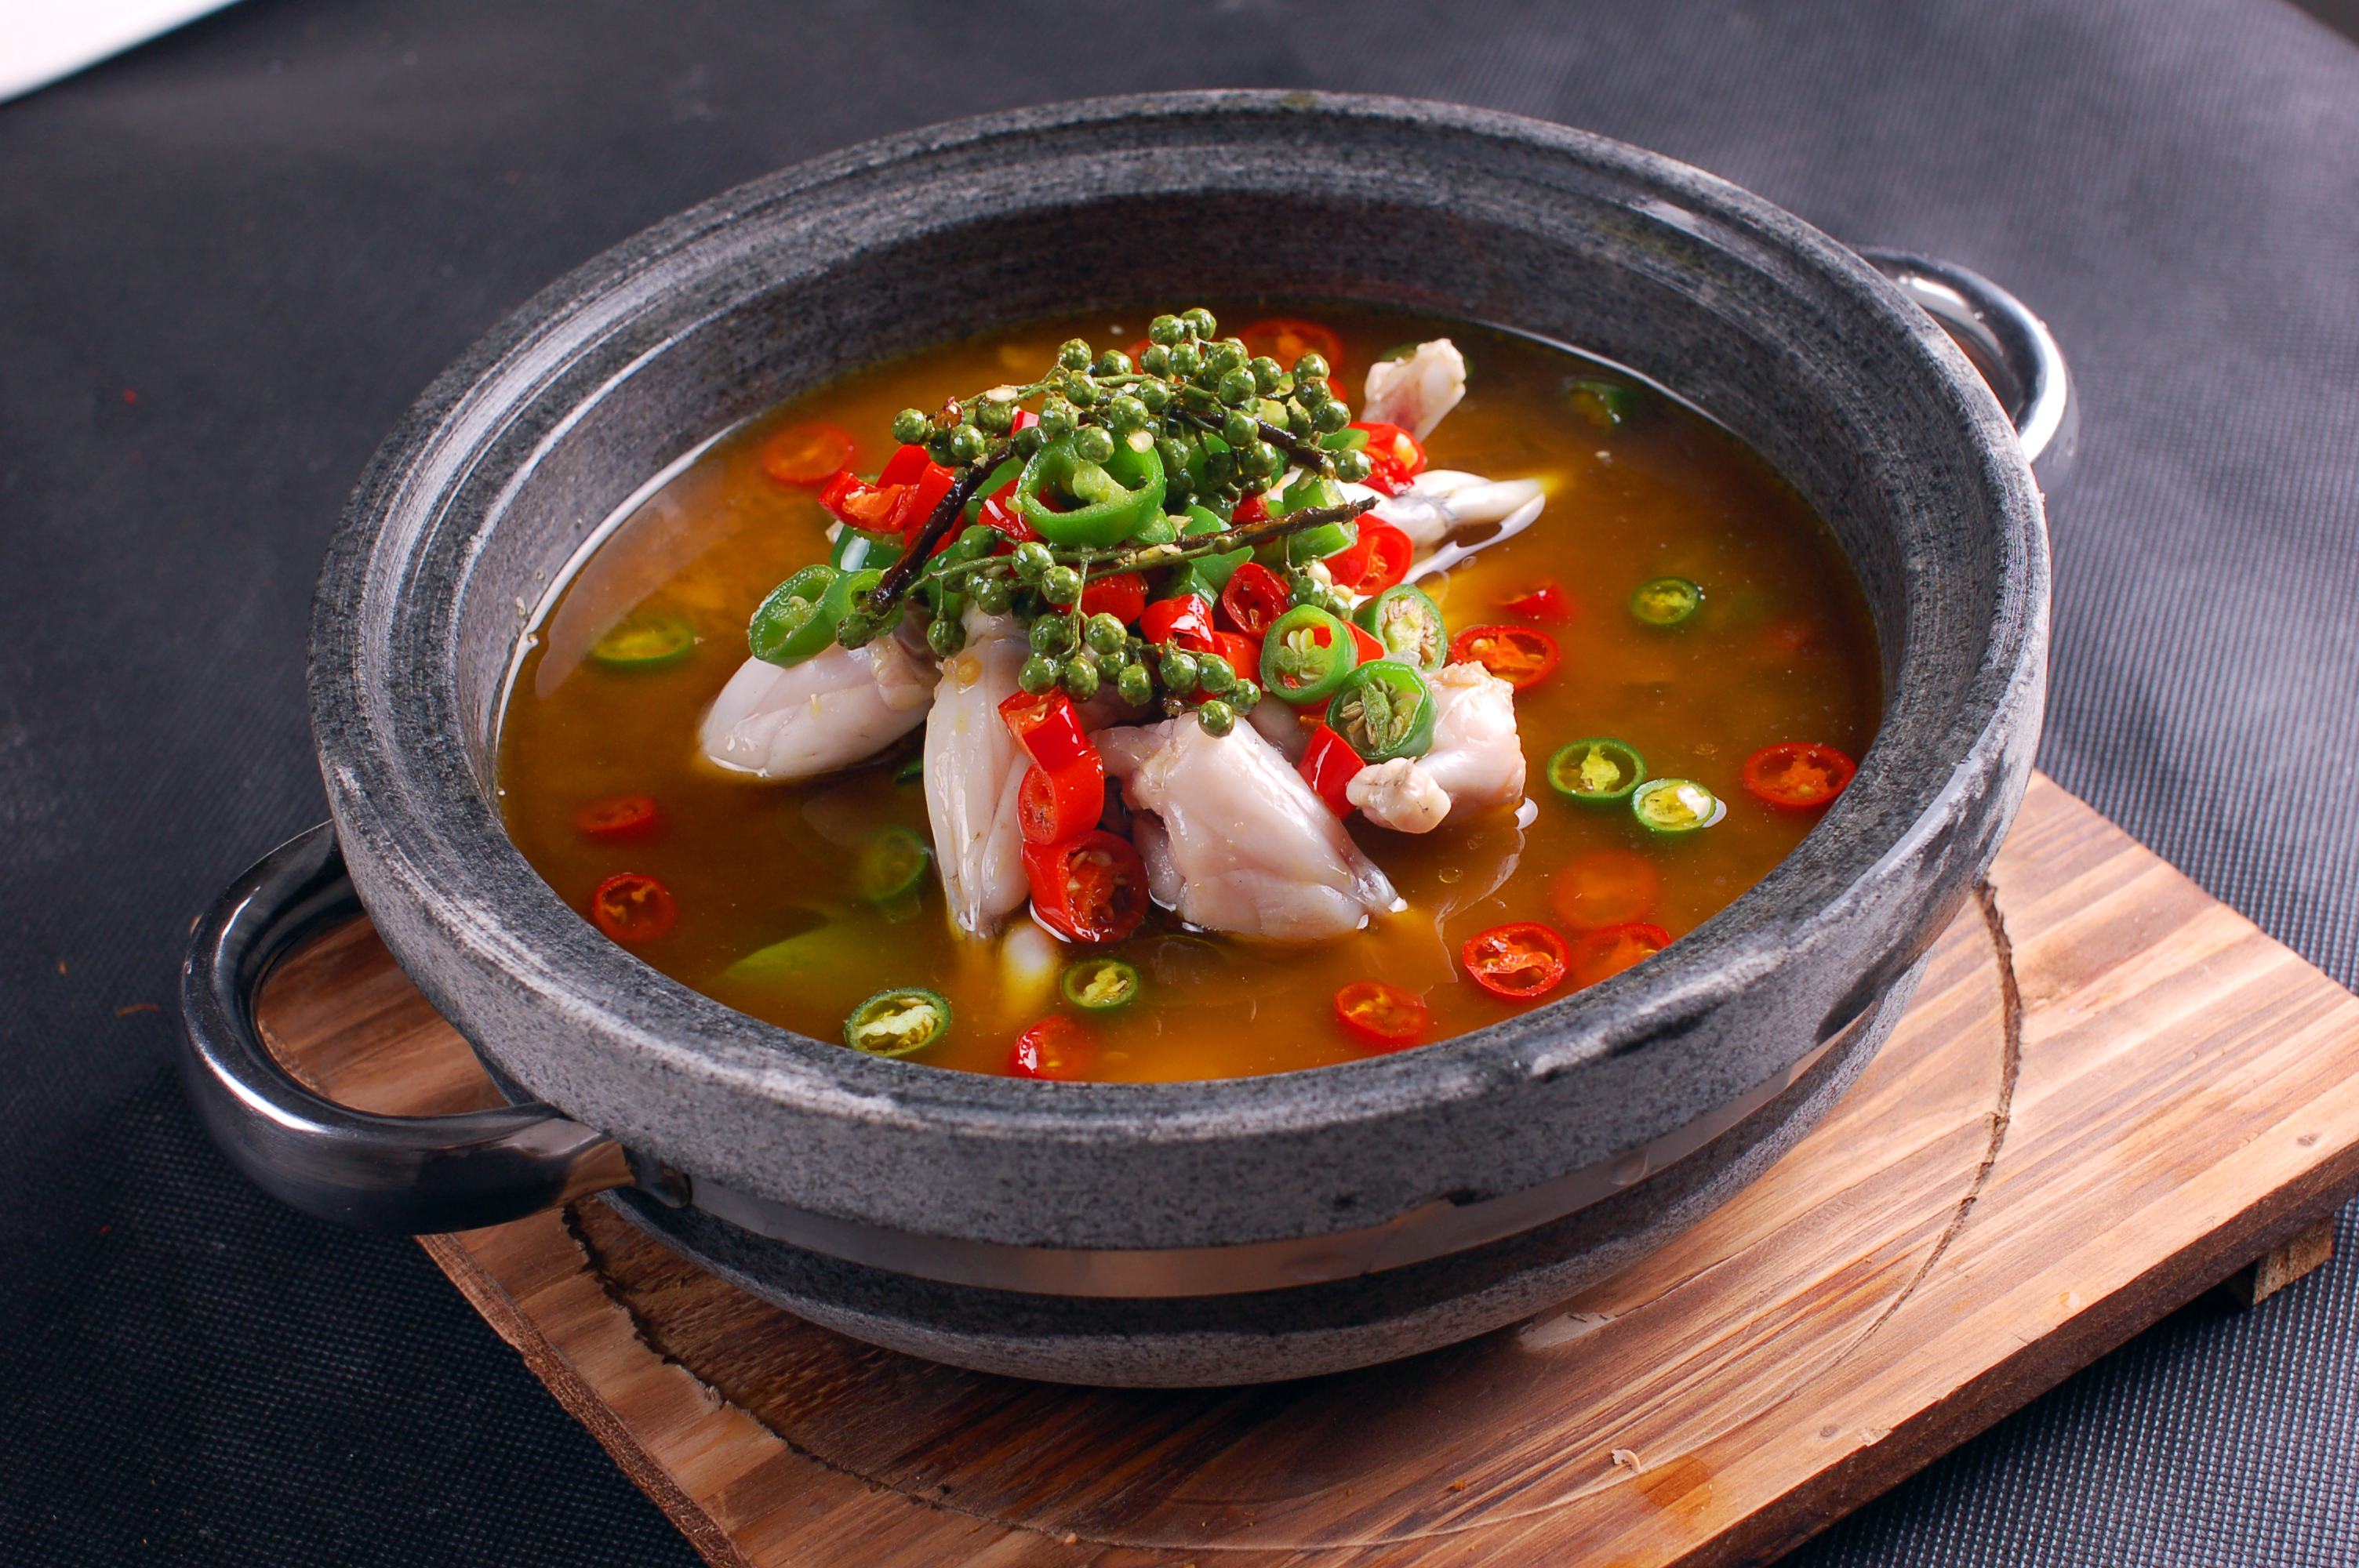 每日推荐六道菜:让你一口气吃两碗饭的菜品推荐 石锅美蛙